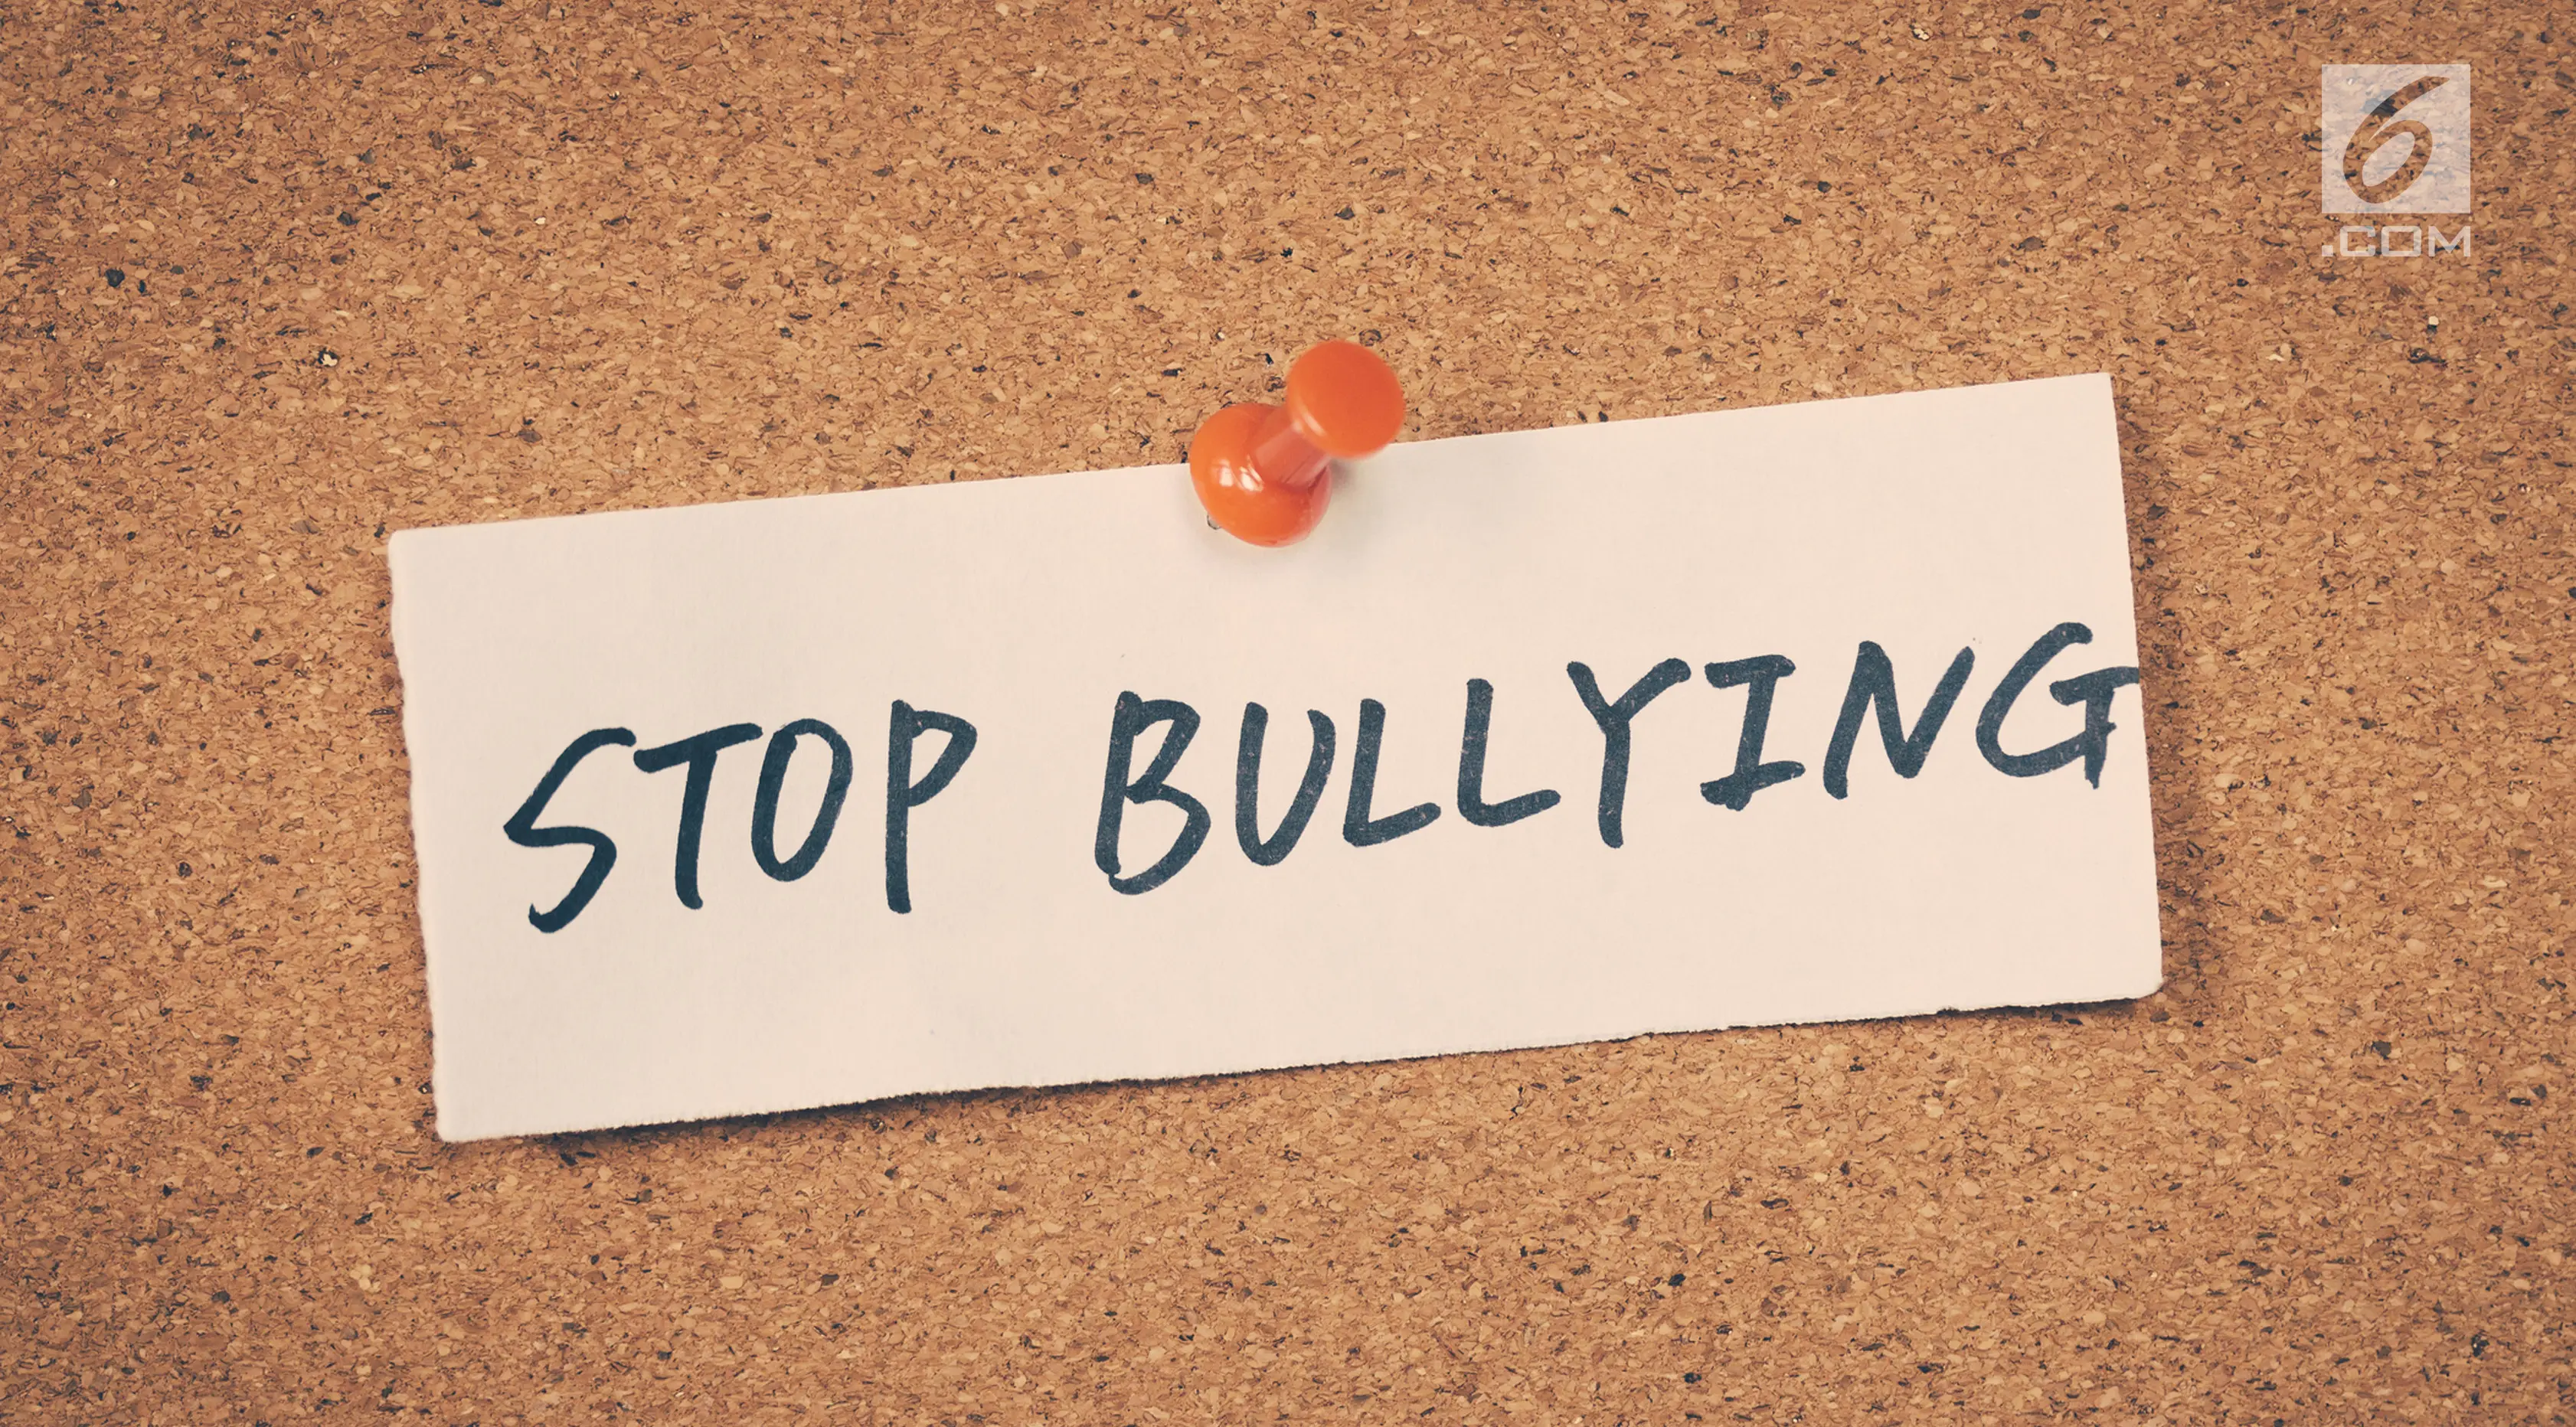 Ilustrasi Foto Bullying (iStockphoto)